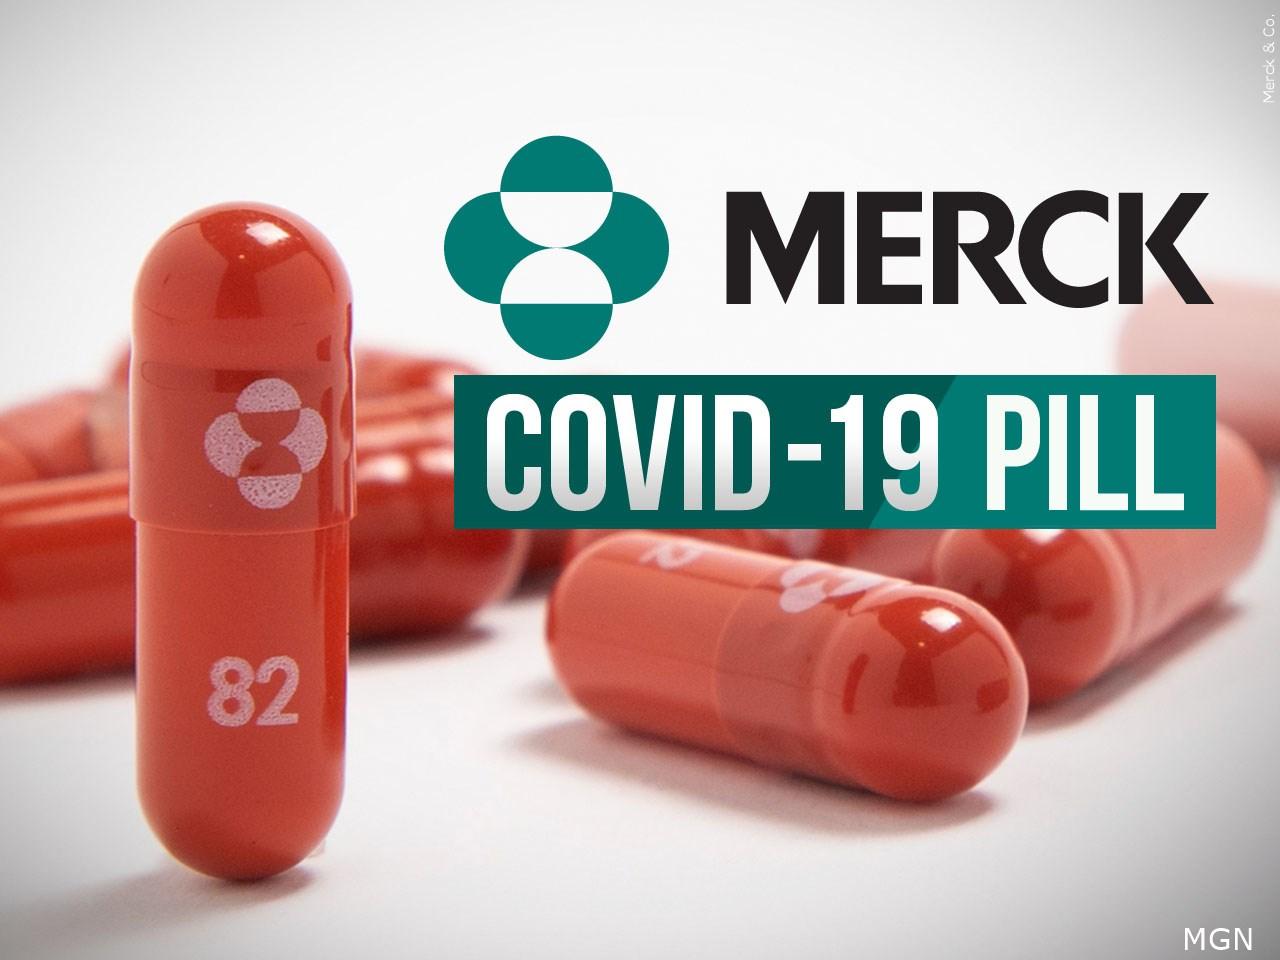 Svi žele pilule protiv covida-19 / Bljesak.info | BH Internet magazin